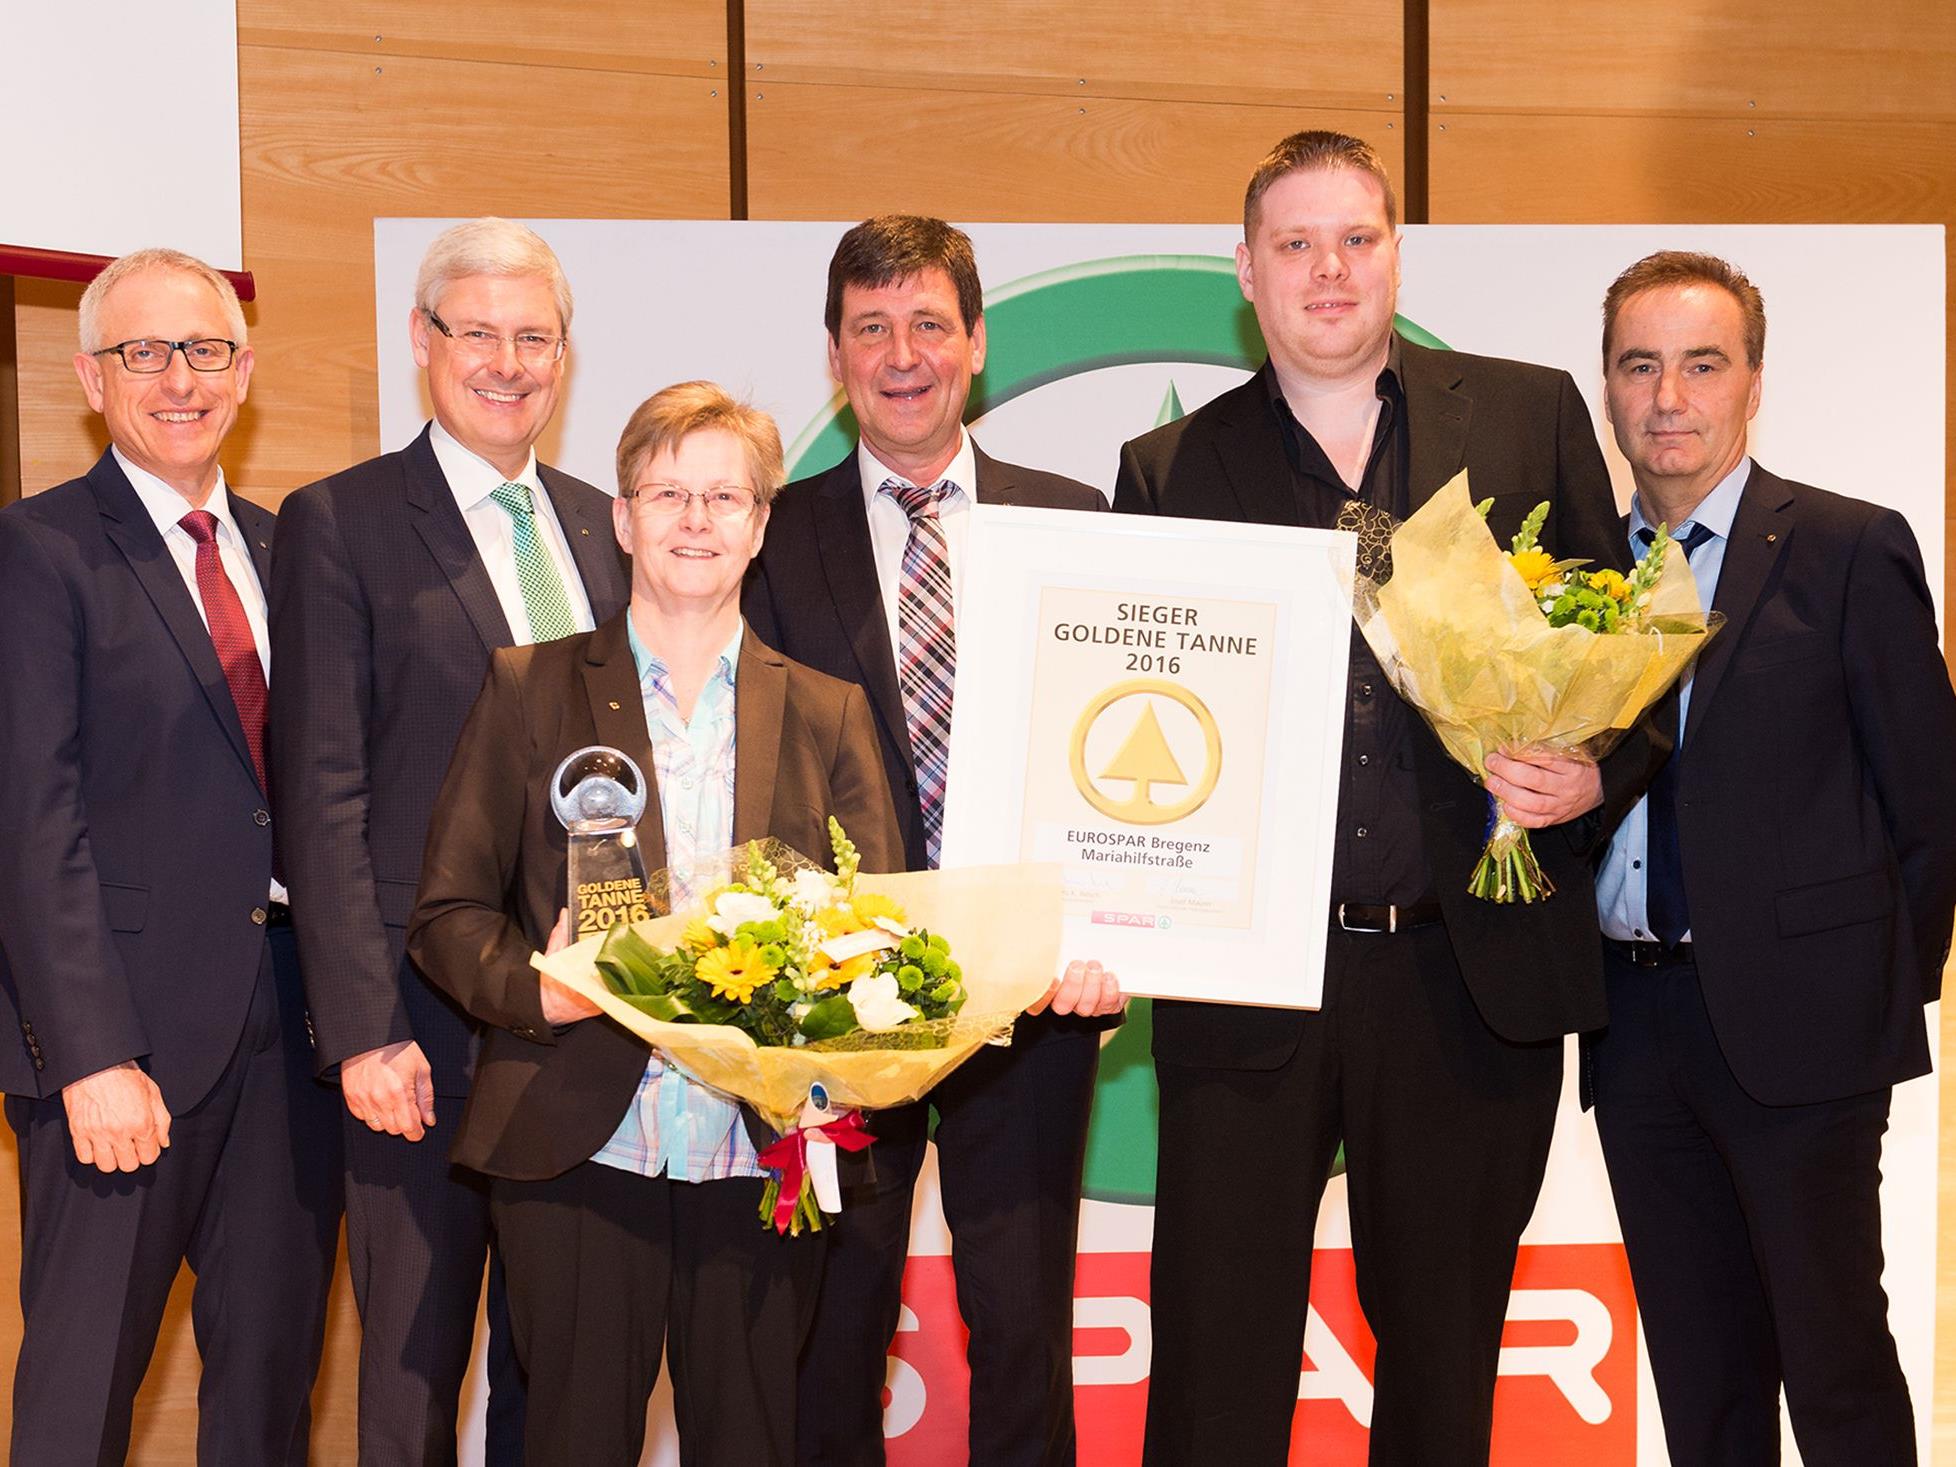 Marktleiterin Sigrid Vögel und ihr Stellvertreter Christian Behrend freuen sich über die höchste SPAR-interne Auszeichnung, die „Goldene Tanne 2016“.